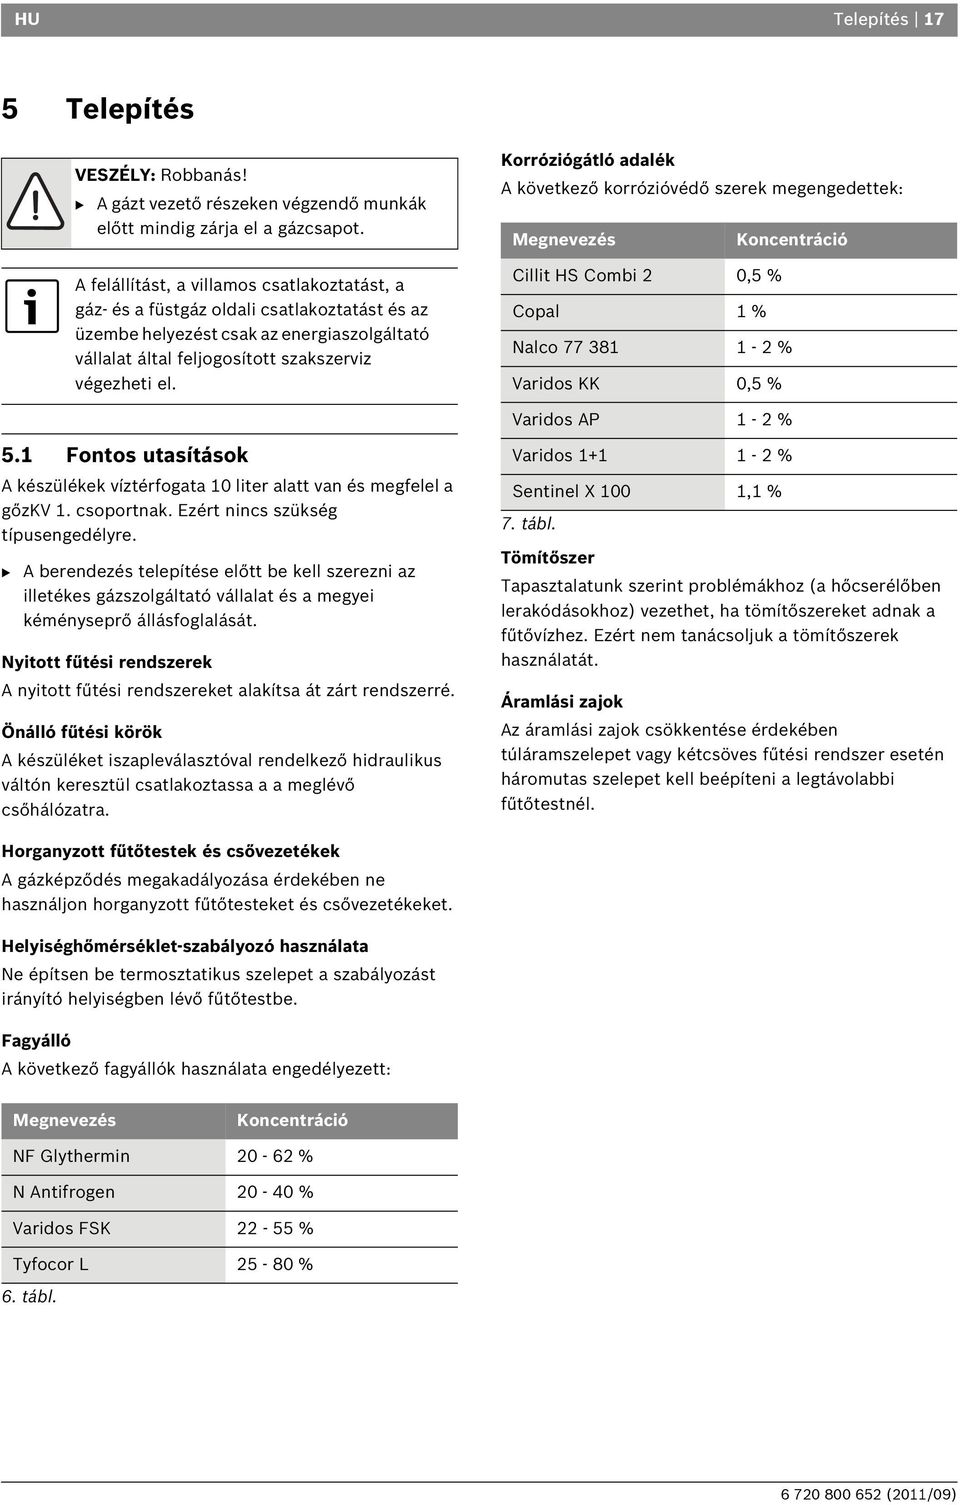 Korróziógátló adalék A következő korrózióvédő szerek megengedettek: Megnevezés Koncentráció Cillit HS Combi 2 0,5 % Copal 1 % Nalco 77 381 1-2 % Varidos KK 0,5 % Varidos AP 1-2 % 5.